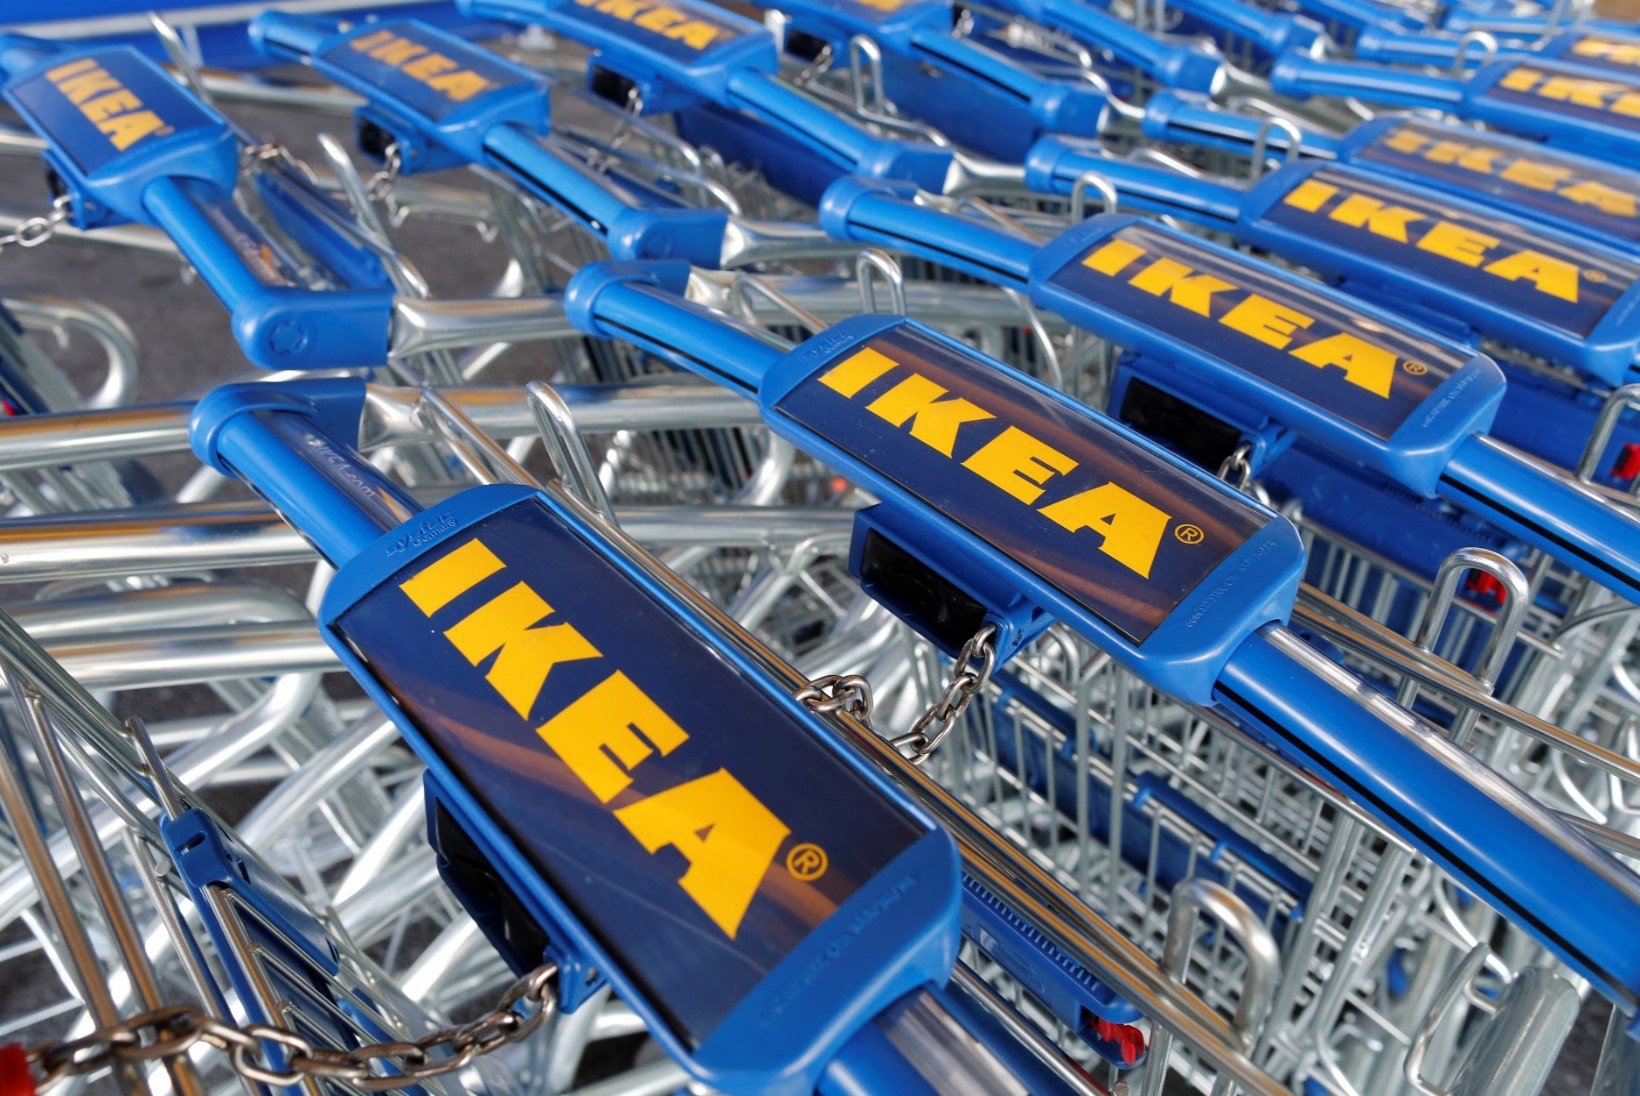 29 MILJONIT KAPPI JA KUMMUTIT: Ikea palub klientidel ohtlikud tooted tagastada